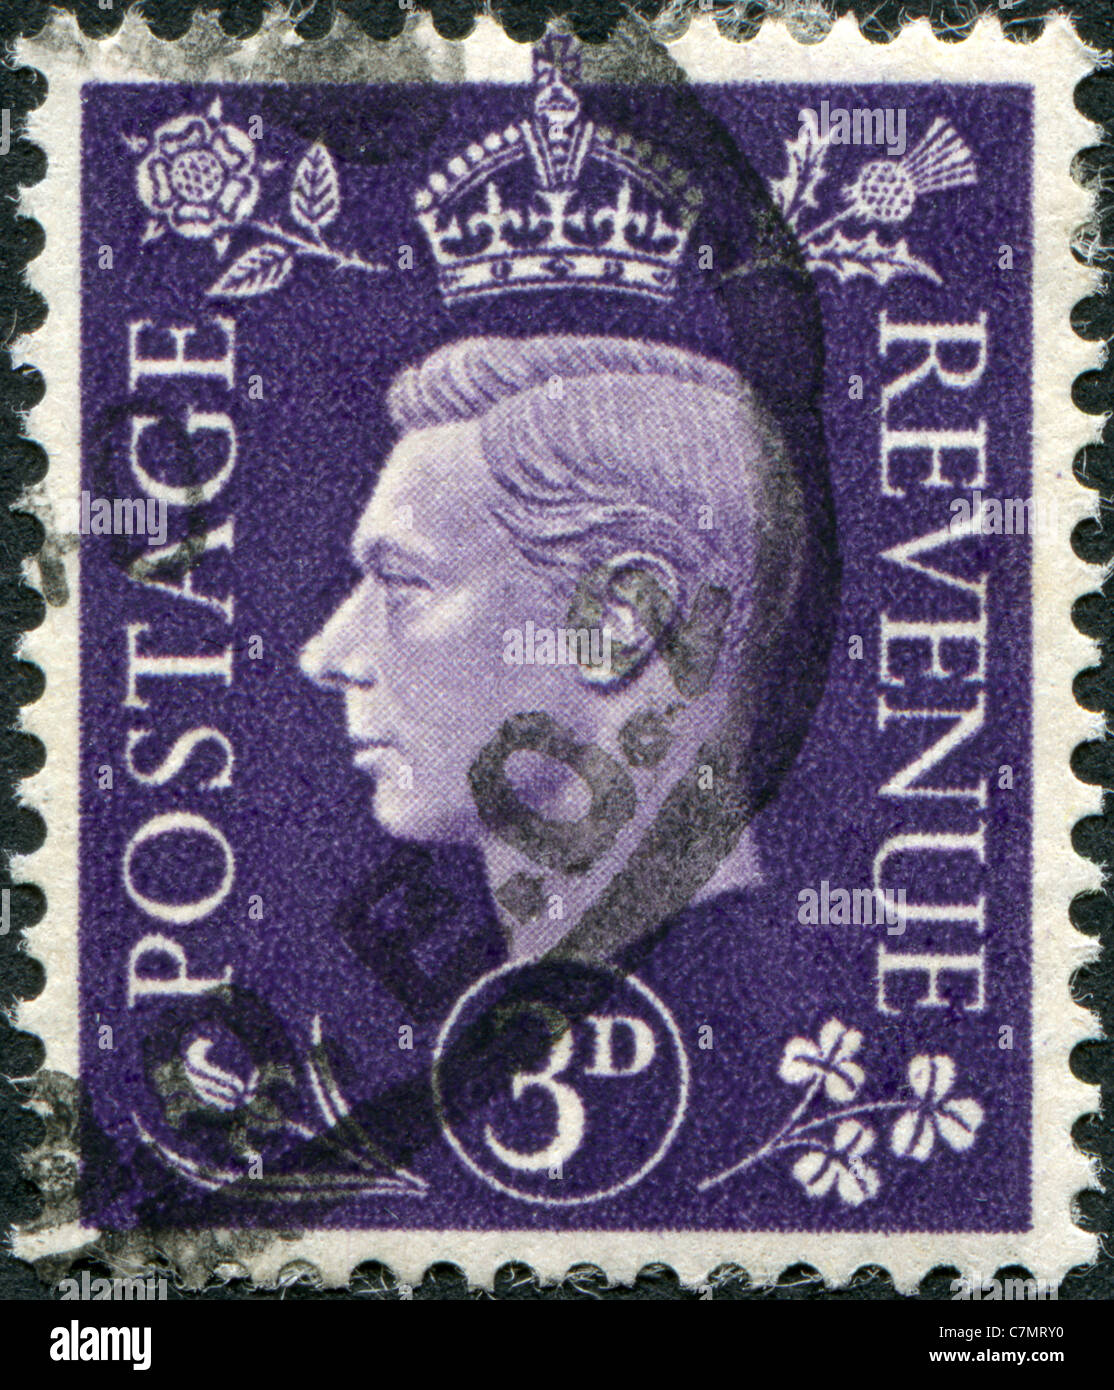 Royaume-uni - 1941 : timbre imprimé en Angleterre, indique George VI du Royaume-Uni Banque D'Images